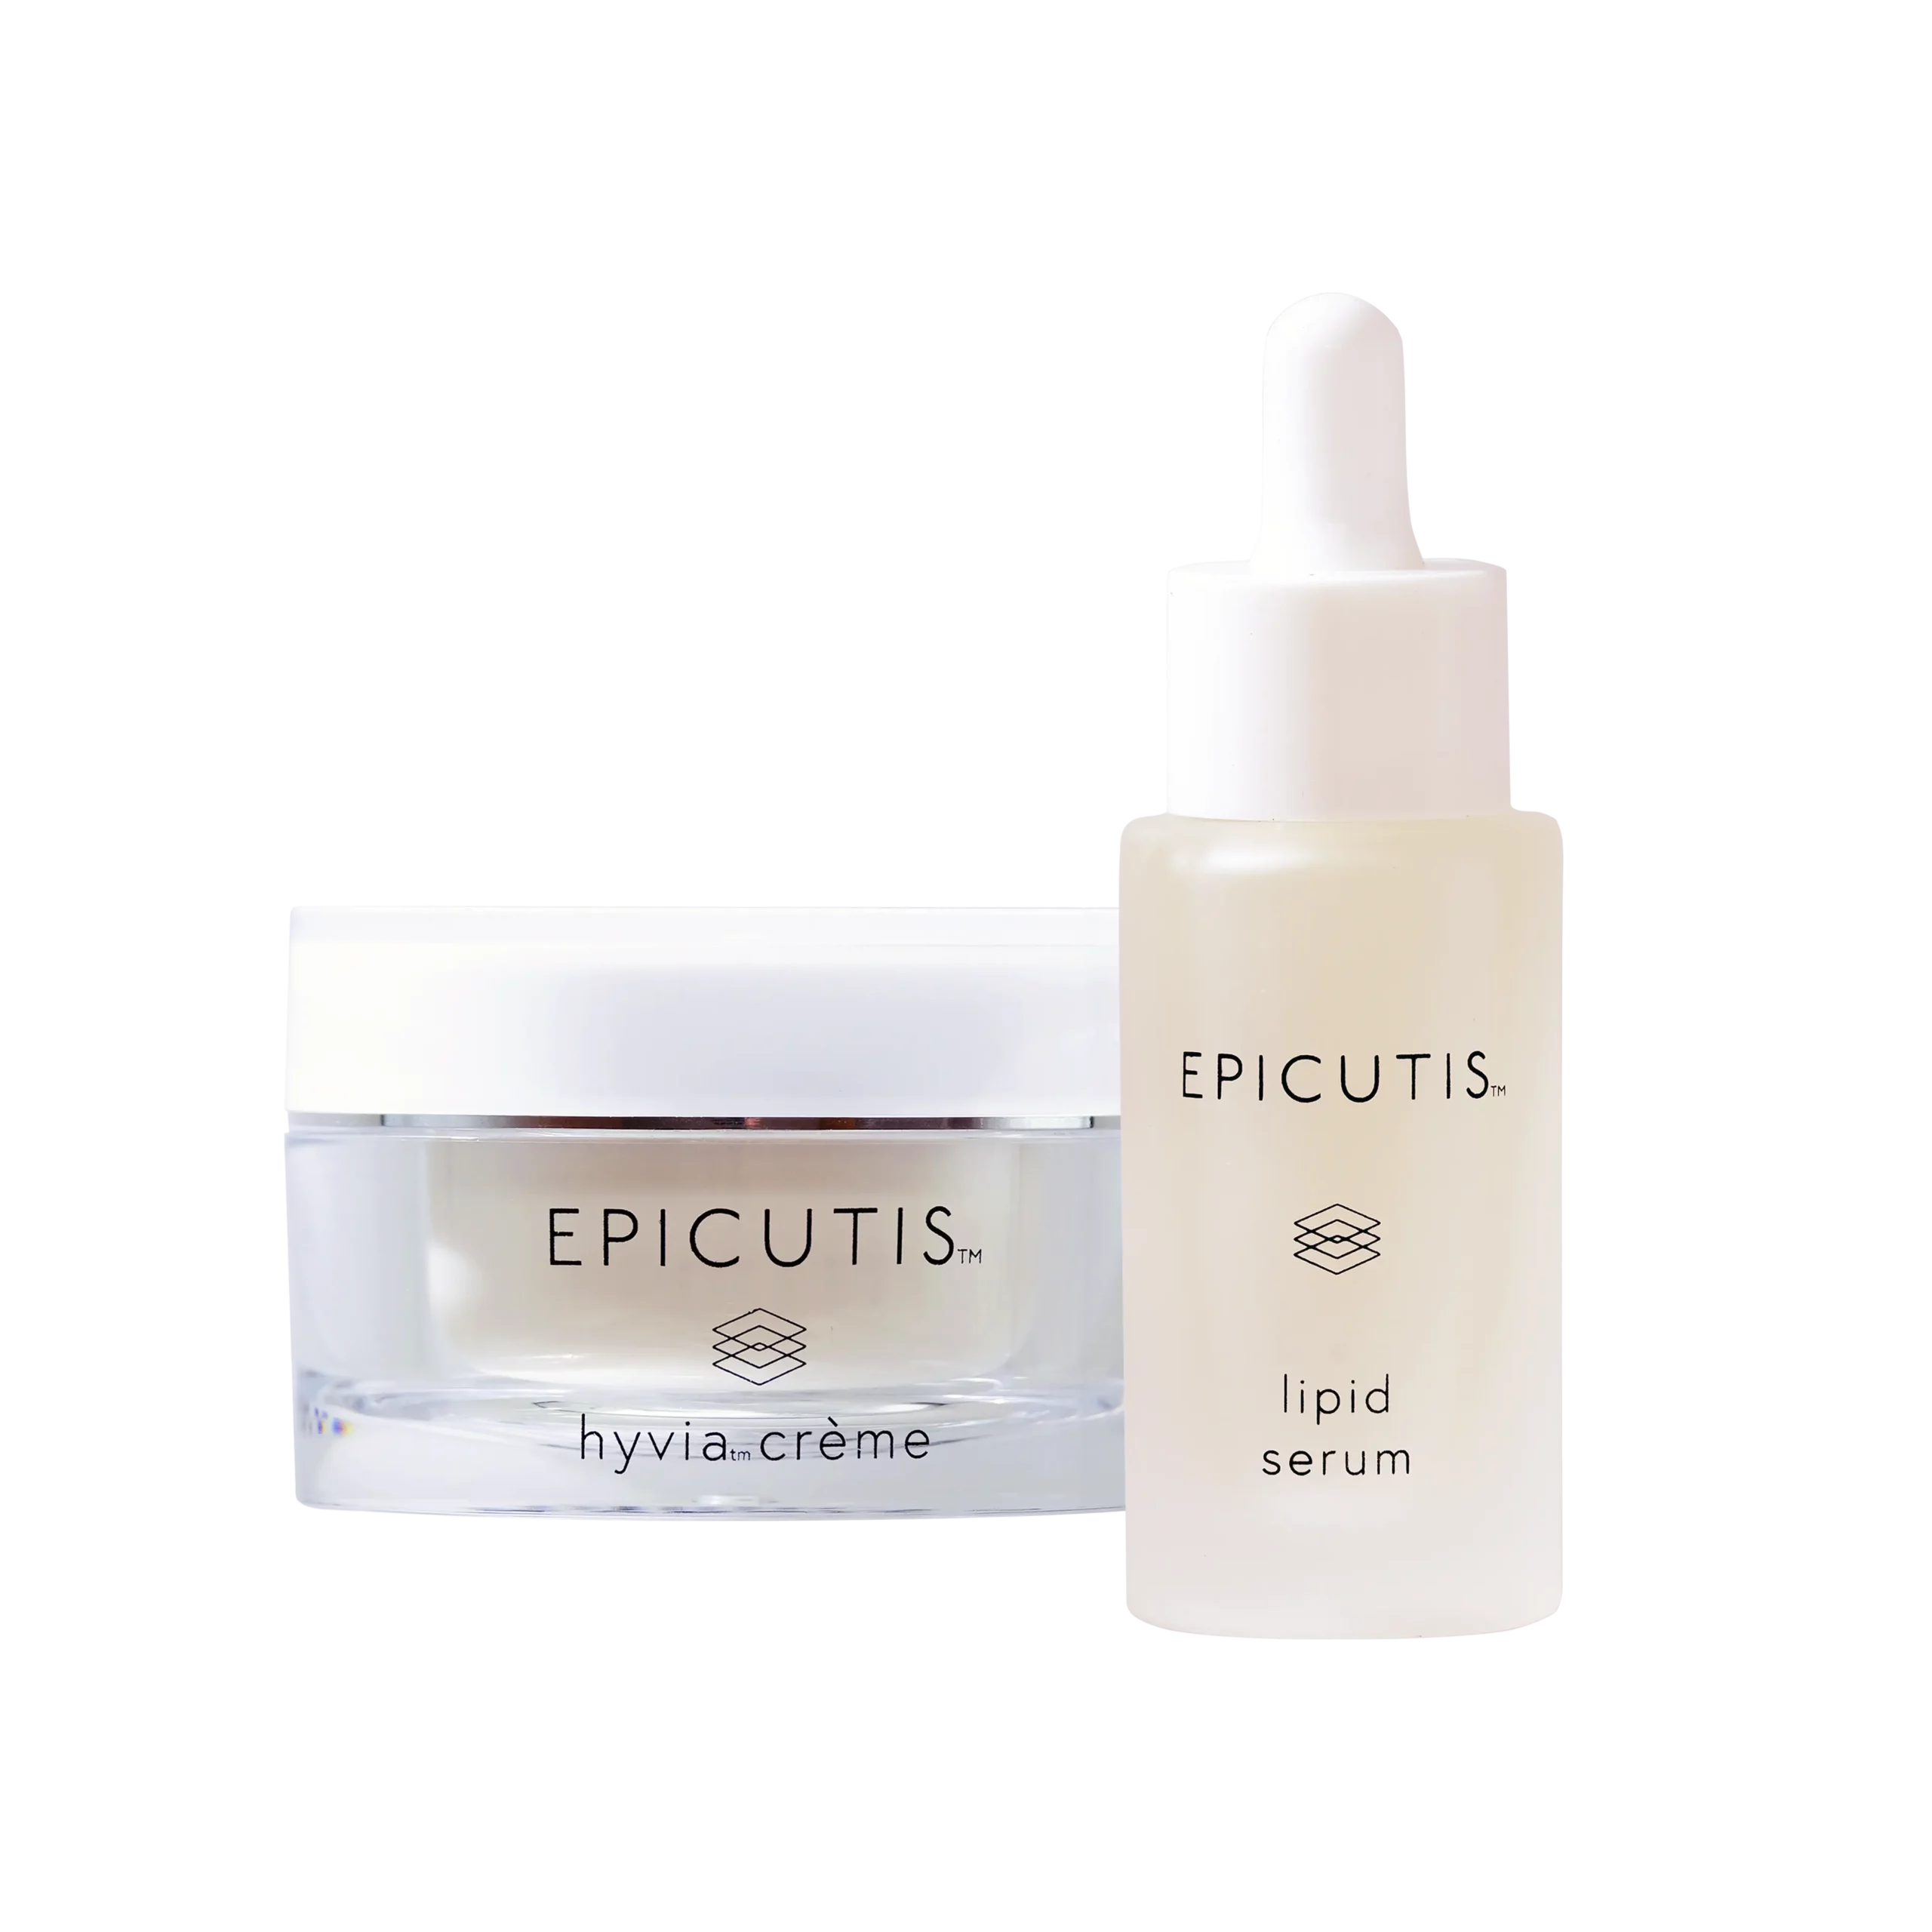 Epicutis: Luxury Skincare Set